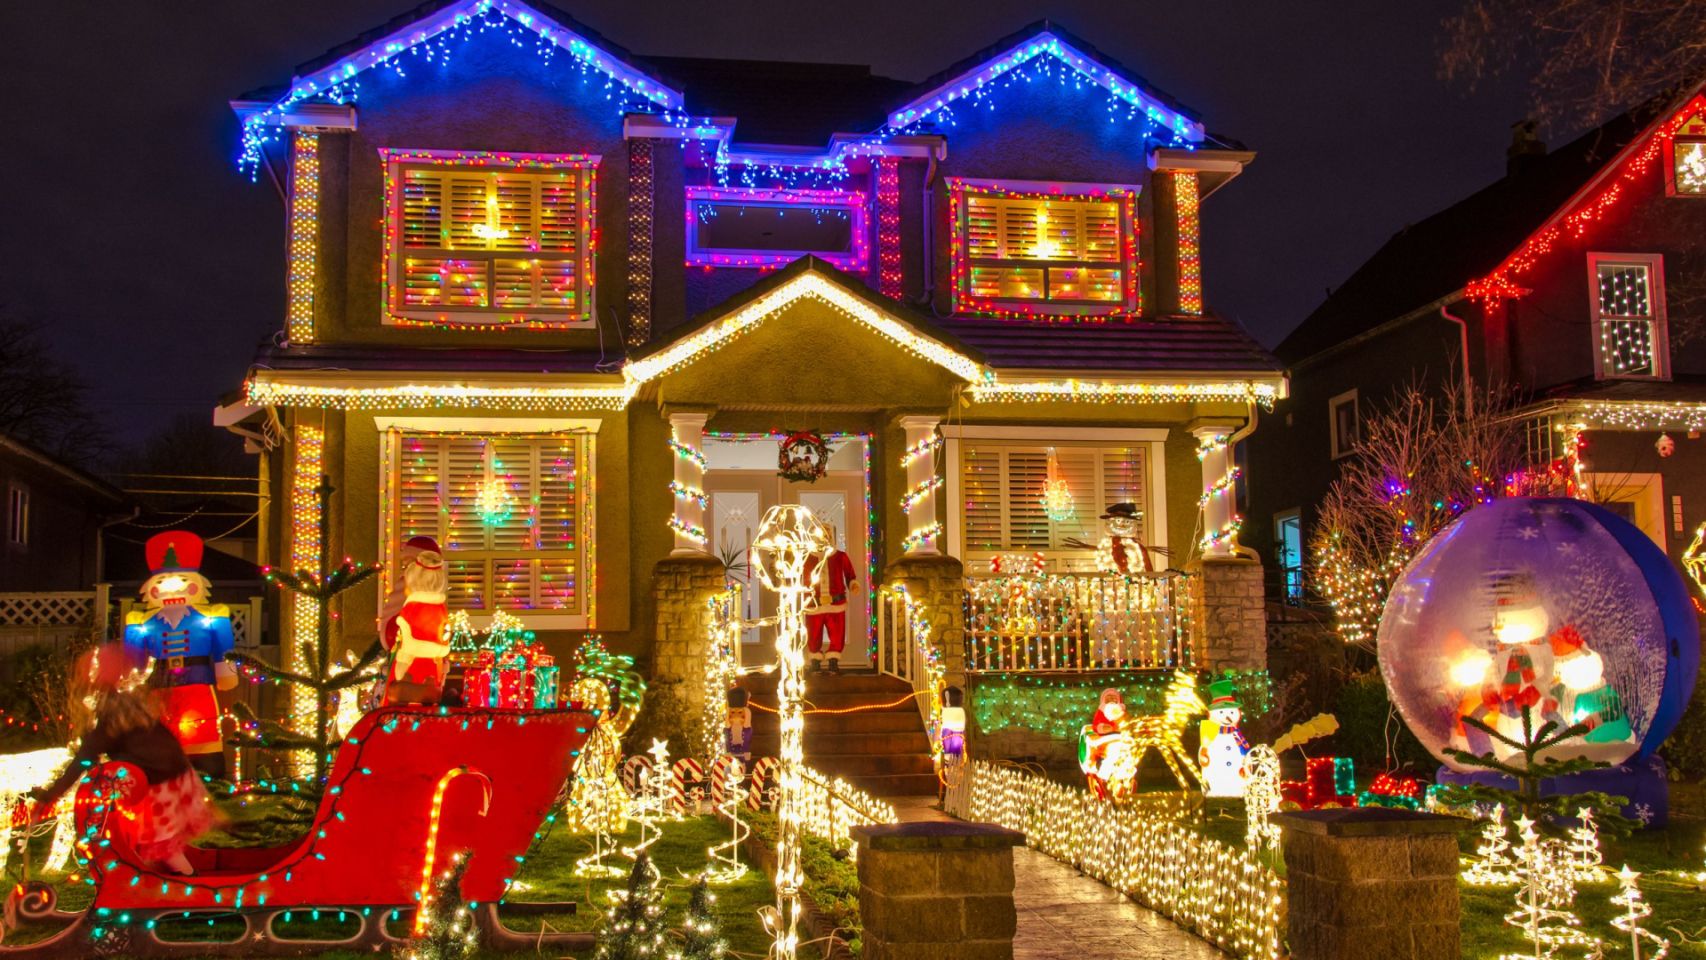 Fachada de una vivienda iluminada con temática navideña.